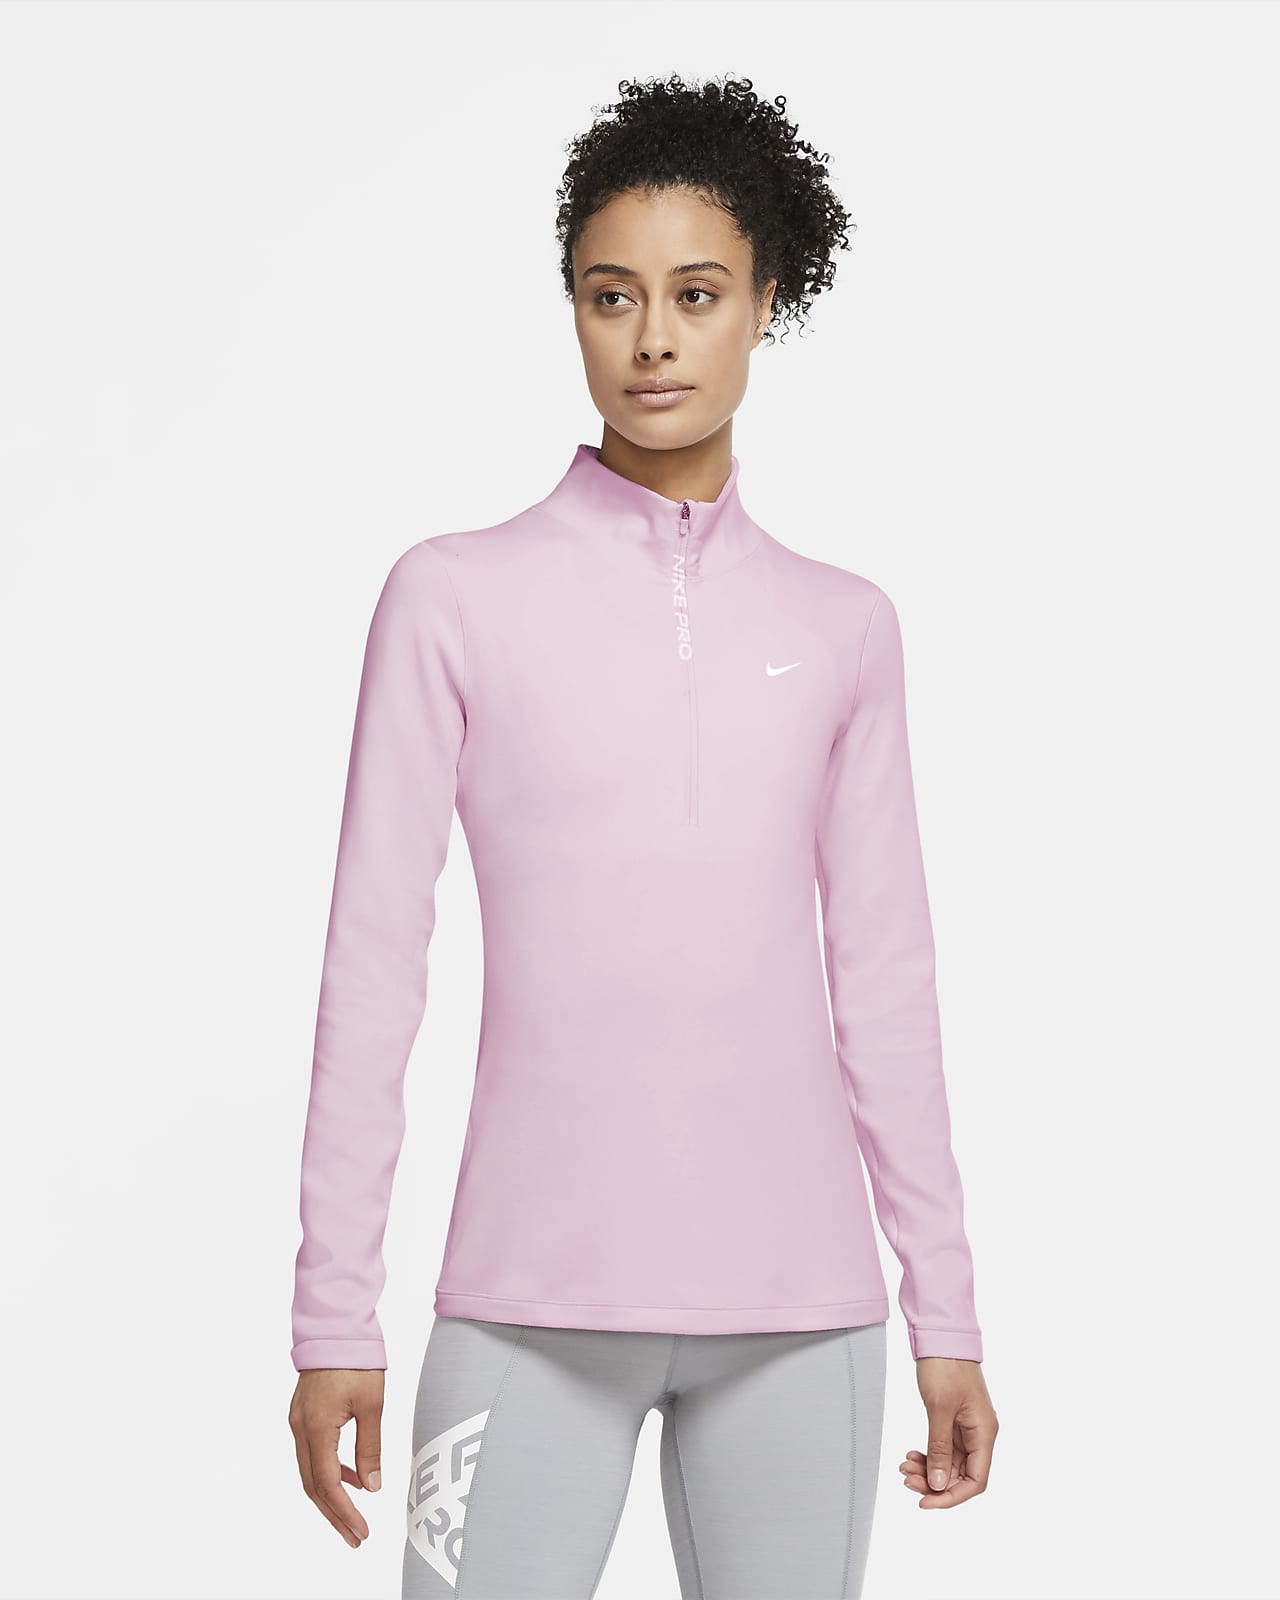 Nike Pro Warm Women's Long-Sleeve 1/2 